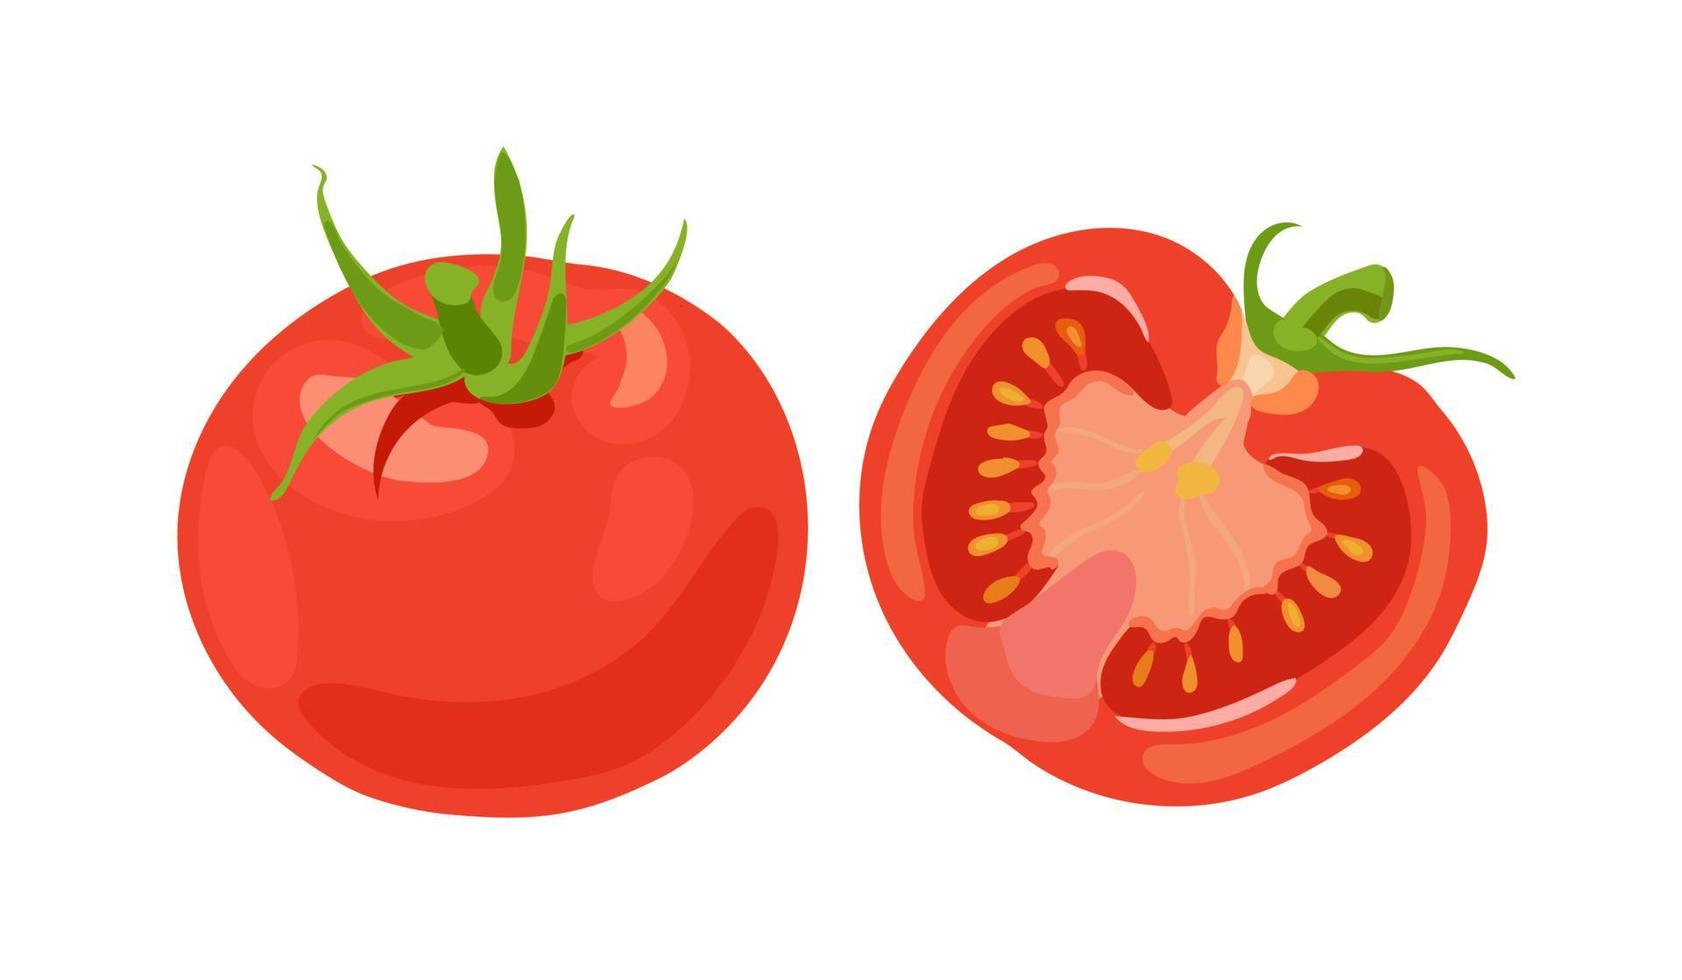 pomodori rossi freschi. la verdura. mezzo pomodoro, un pomodoro intero. illustrazione vettoriale